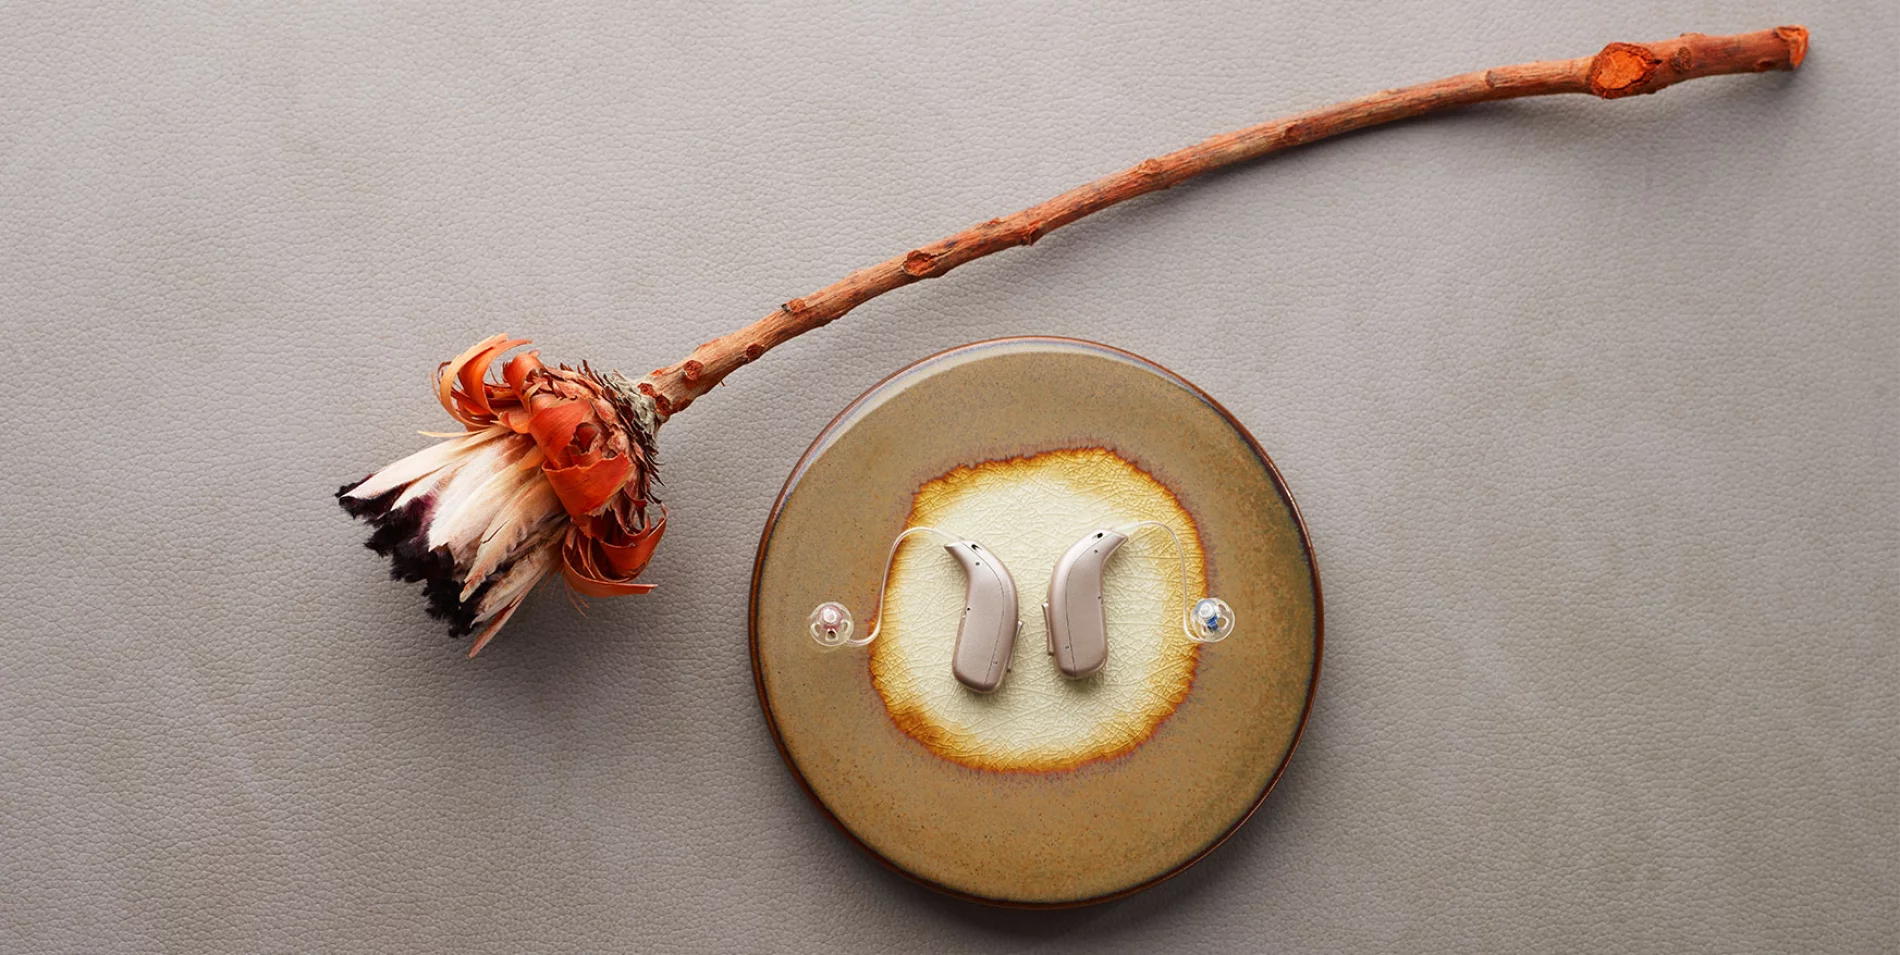 Zwei moderne Hörgeräte auf einem dekorativen Teller neben einer getrockneten Blume. Ästhetische Hörgeräte, modernes Design, Hörakustik.